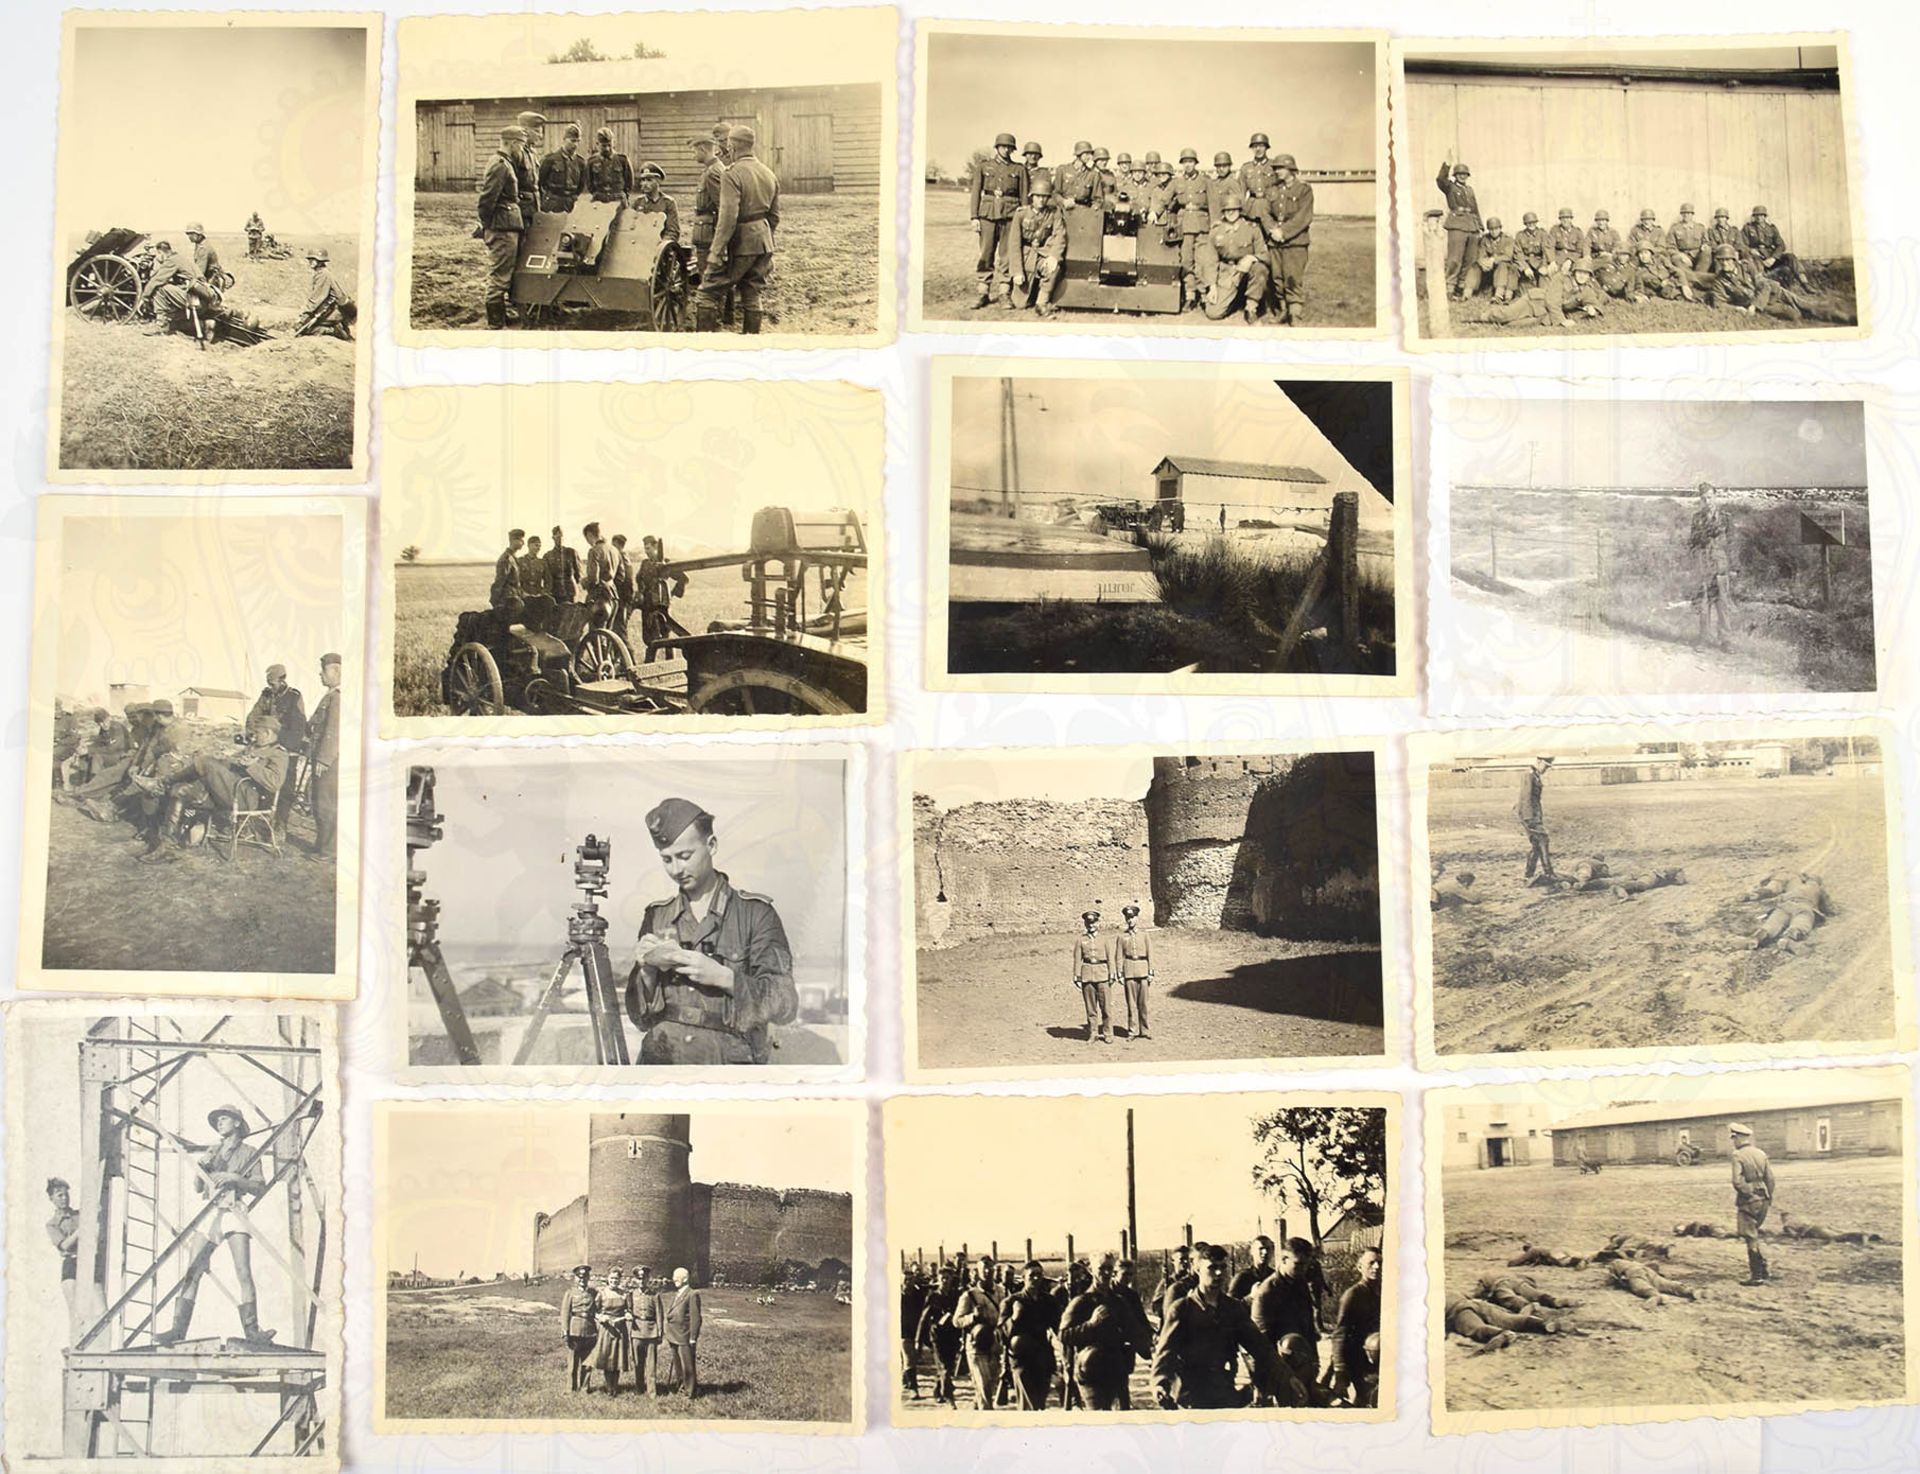 41 FOTOS, zahlr. 7,5cm leichte Infanterie-Geschütze 18, Ausbildung, Scharfschießen, Offiziere,